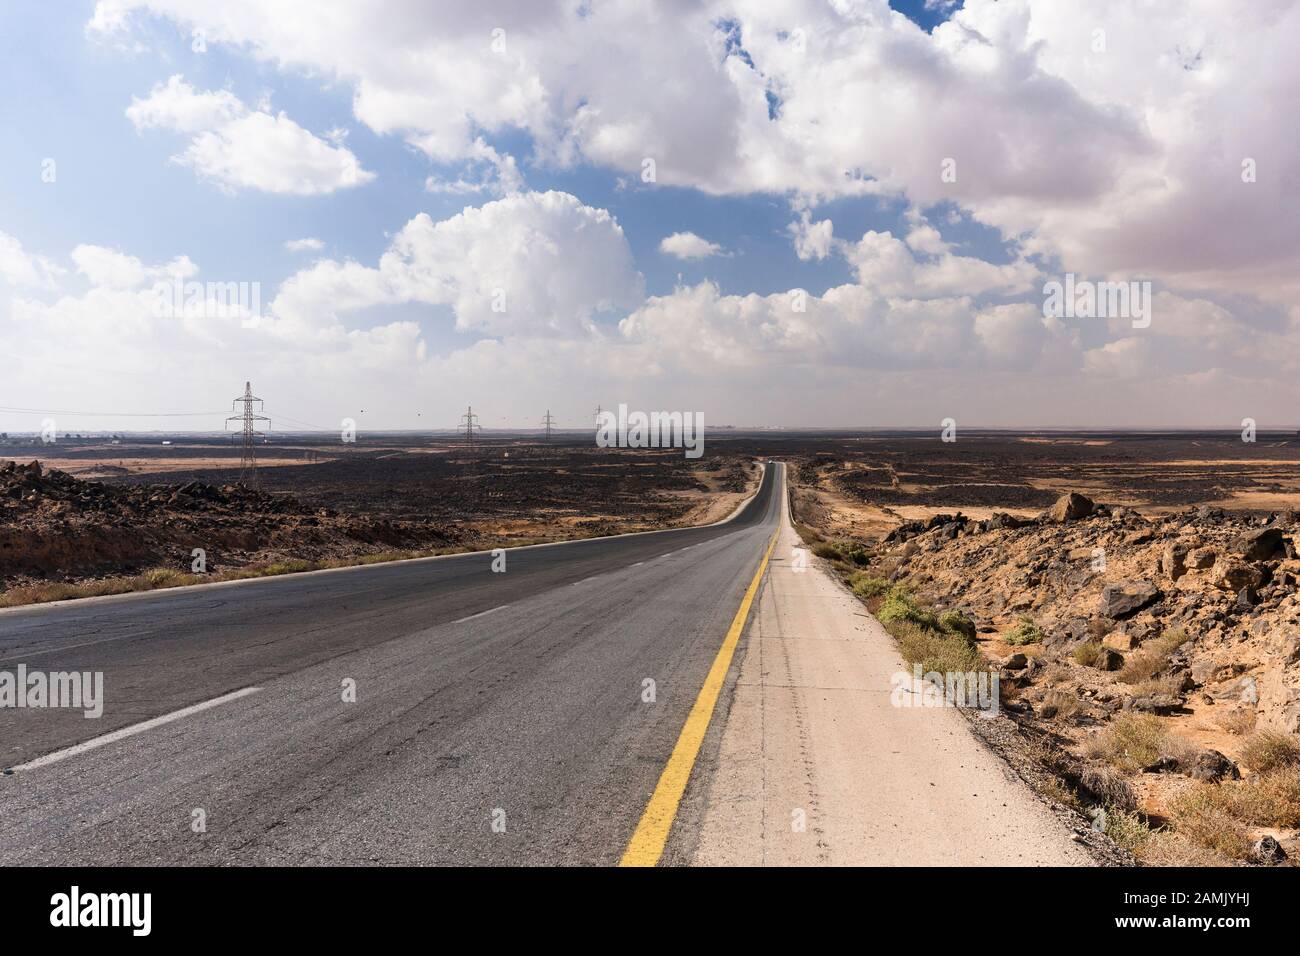 Desert Road, Desert highway, route 5, in basalt gravel desert, near Azraq, eastern desert, Jordan, middle east, Asia Stock Photo